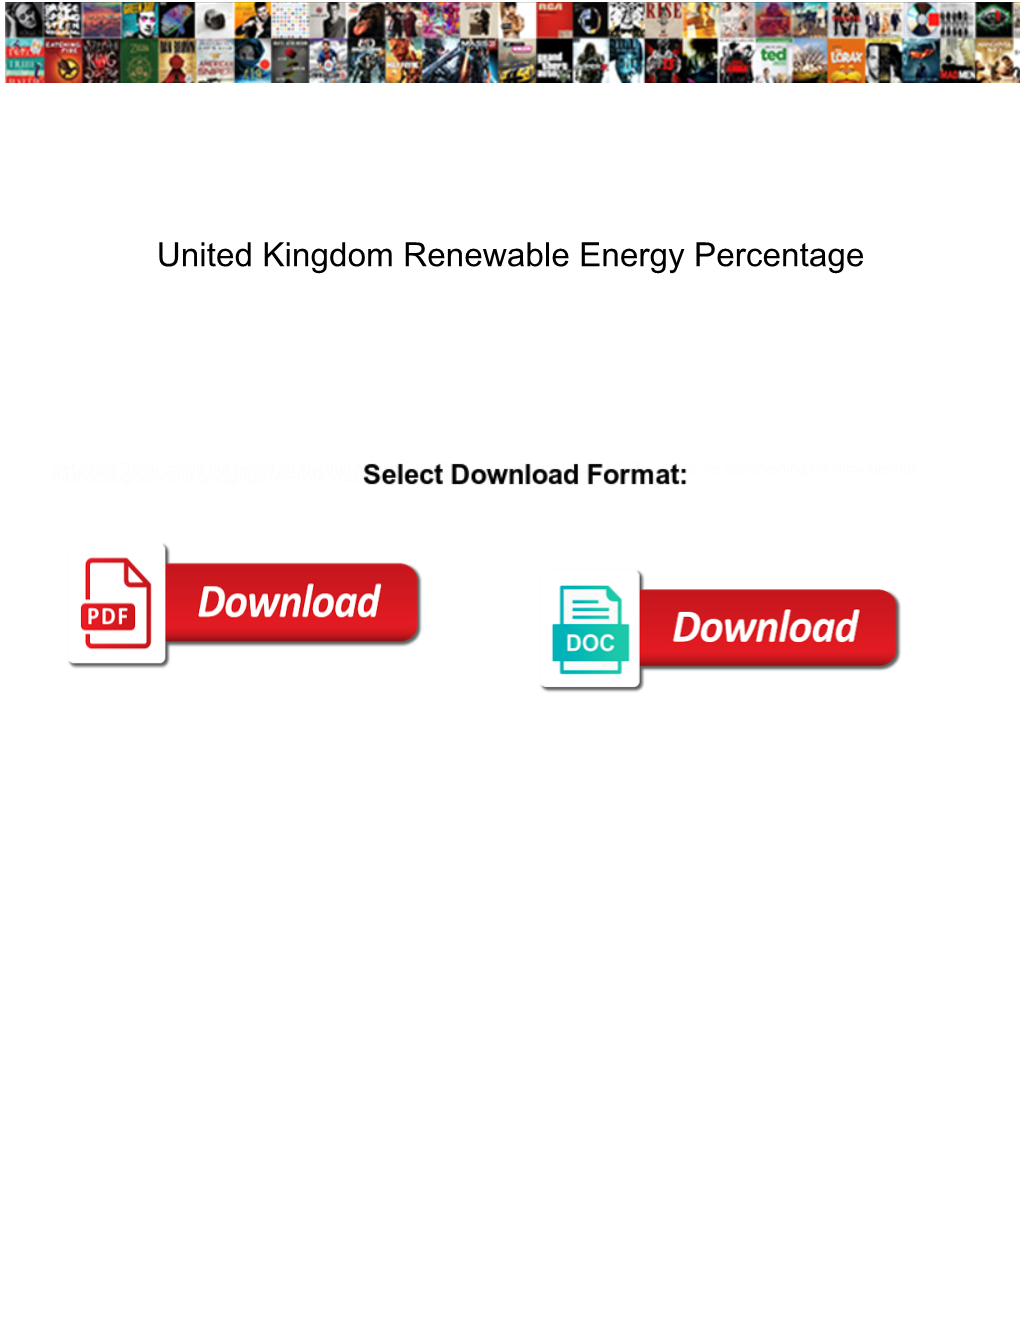 United Kingdom Renewable Energy Percentage